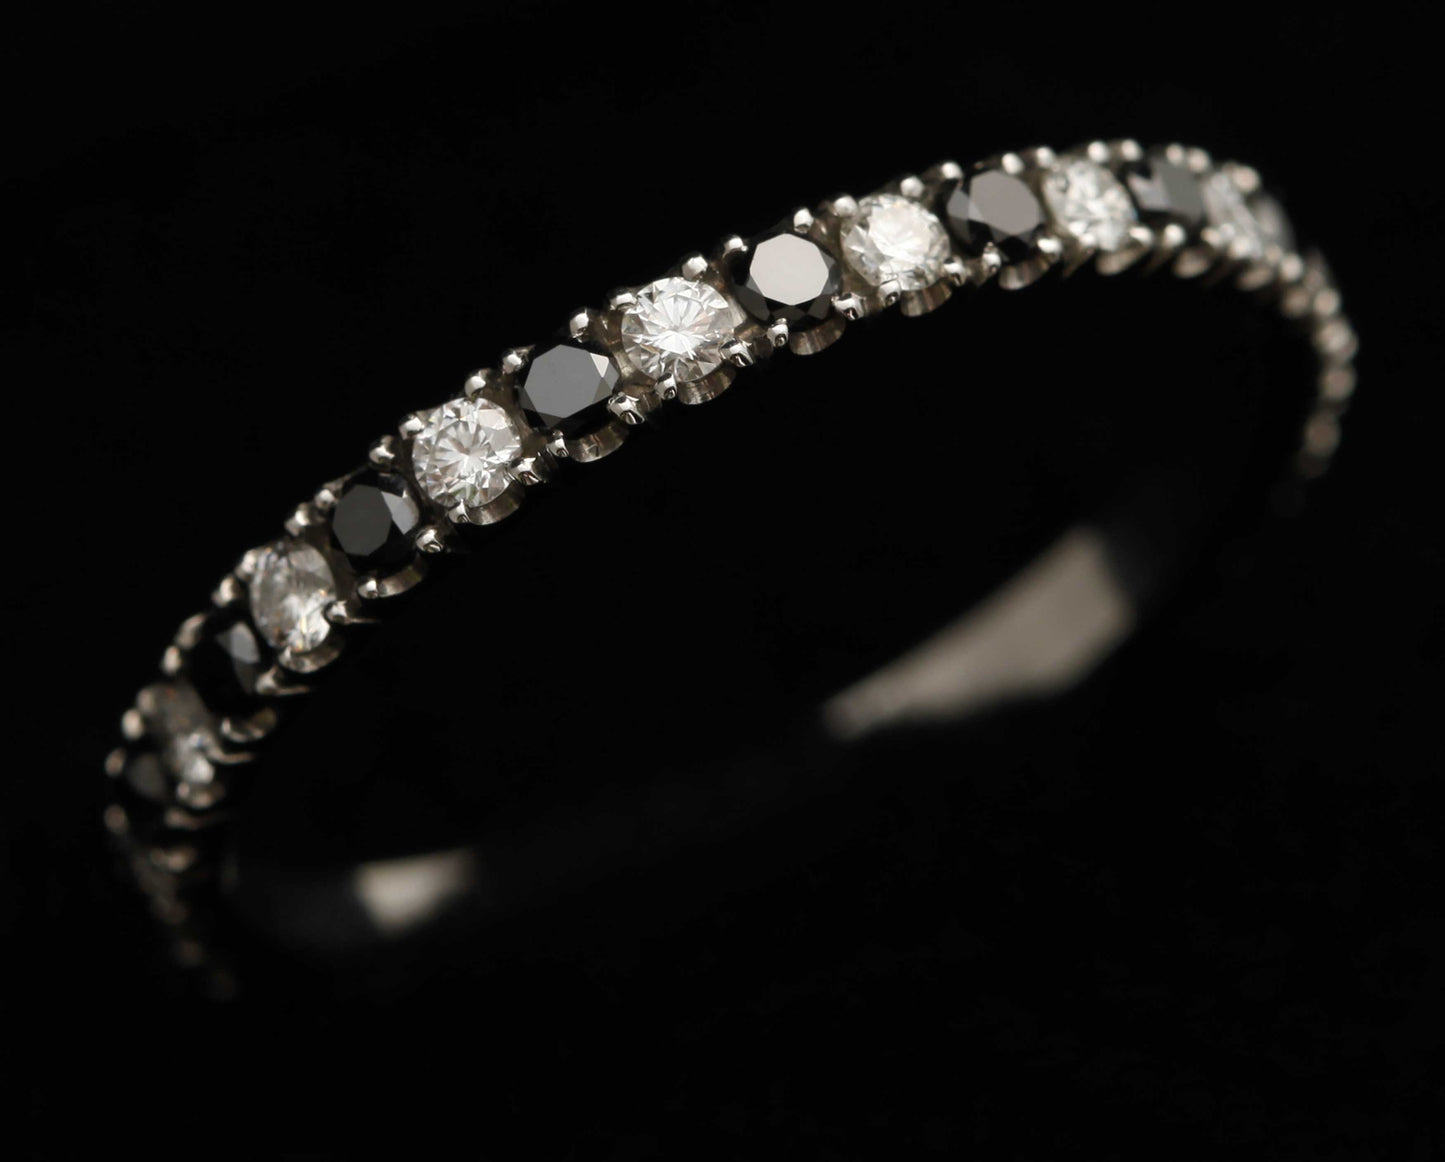 Medium Addon aus Stahl mit Diamanten und schwarzen 1,9mm Diamanten vollständig besetzt